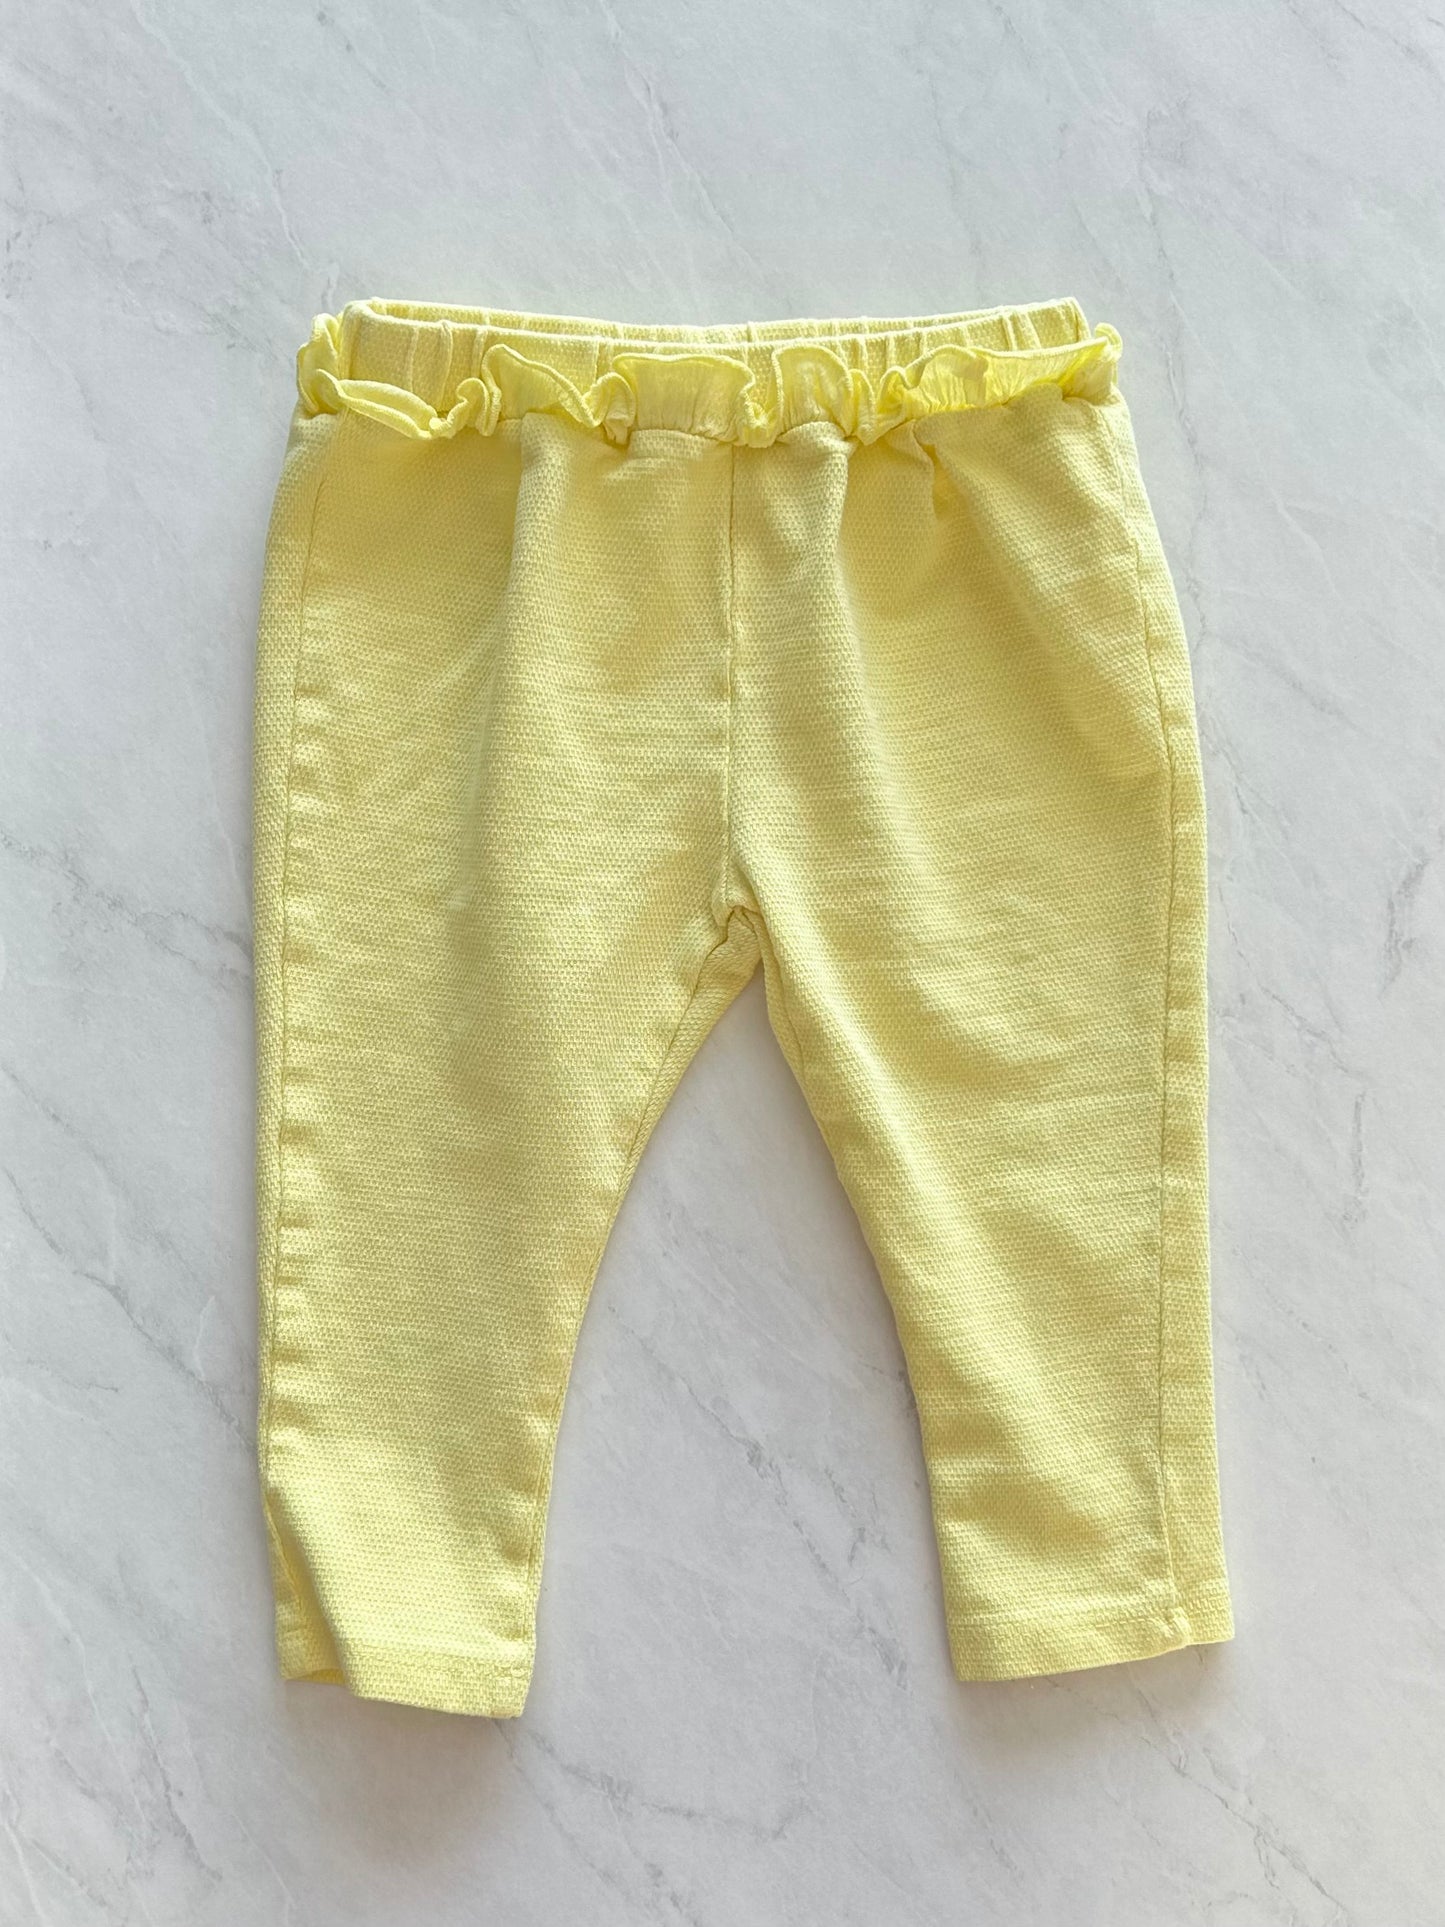 Pantalon - Zara - 18-24 mois